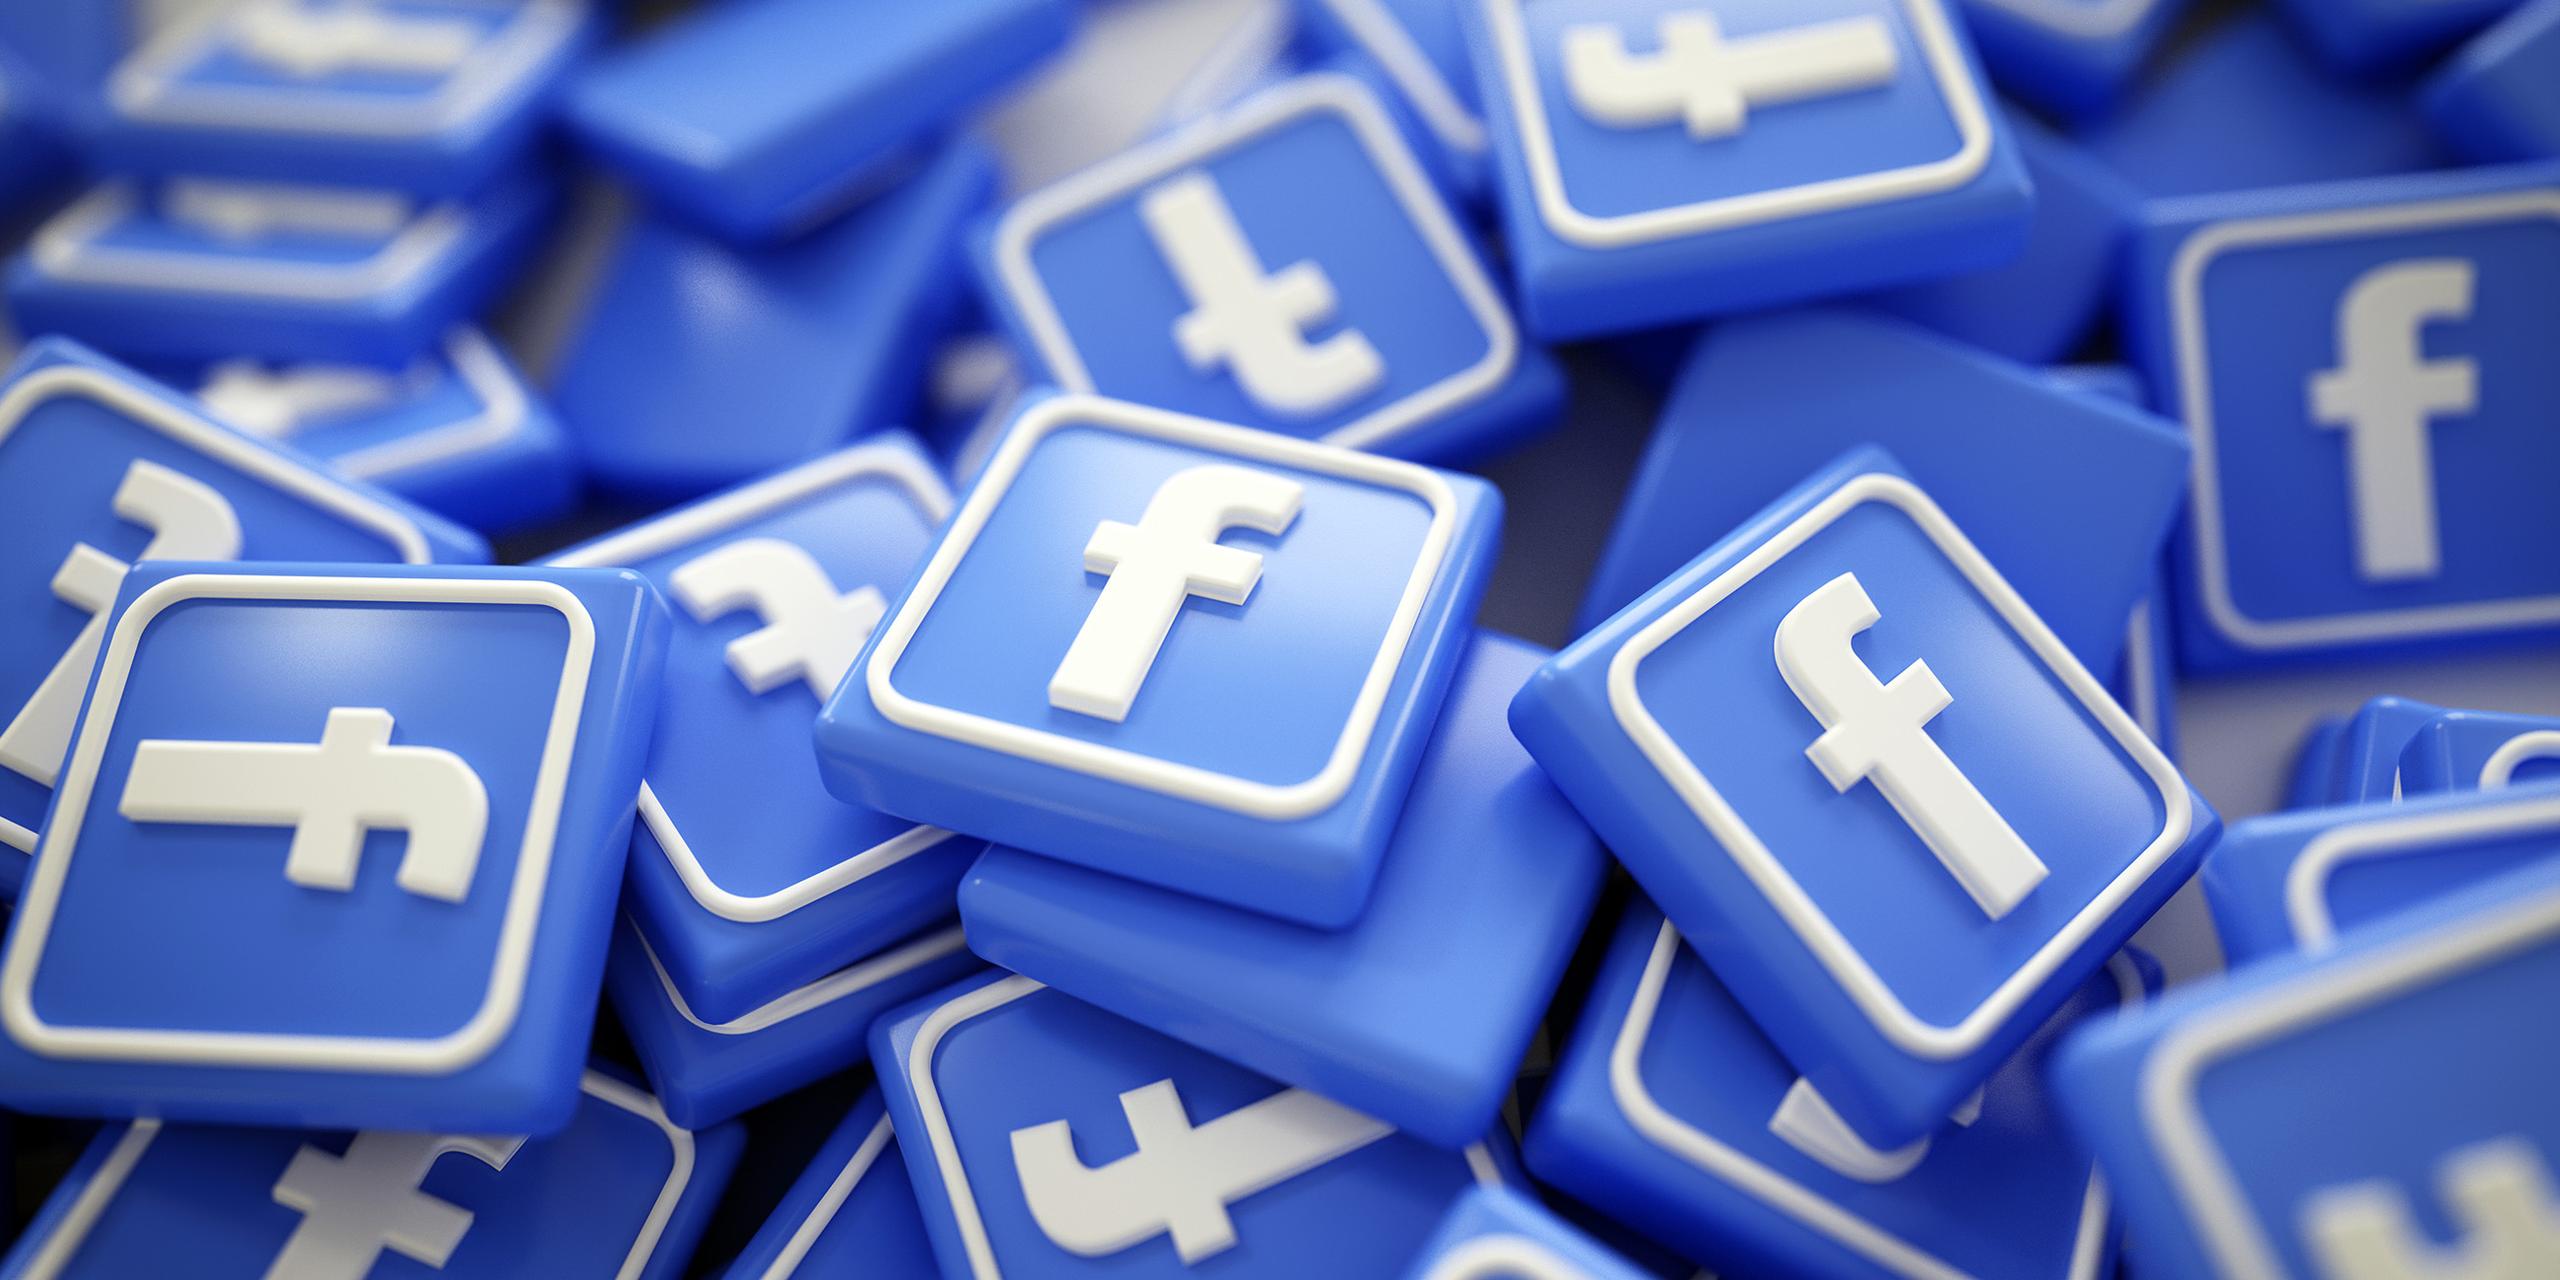 Come far crescere la Pagina Facebook della tua attività olistica?